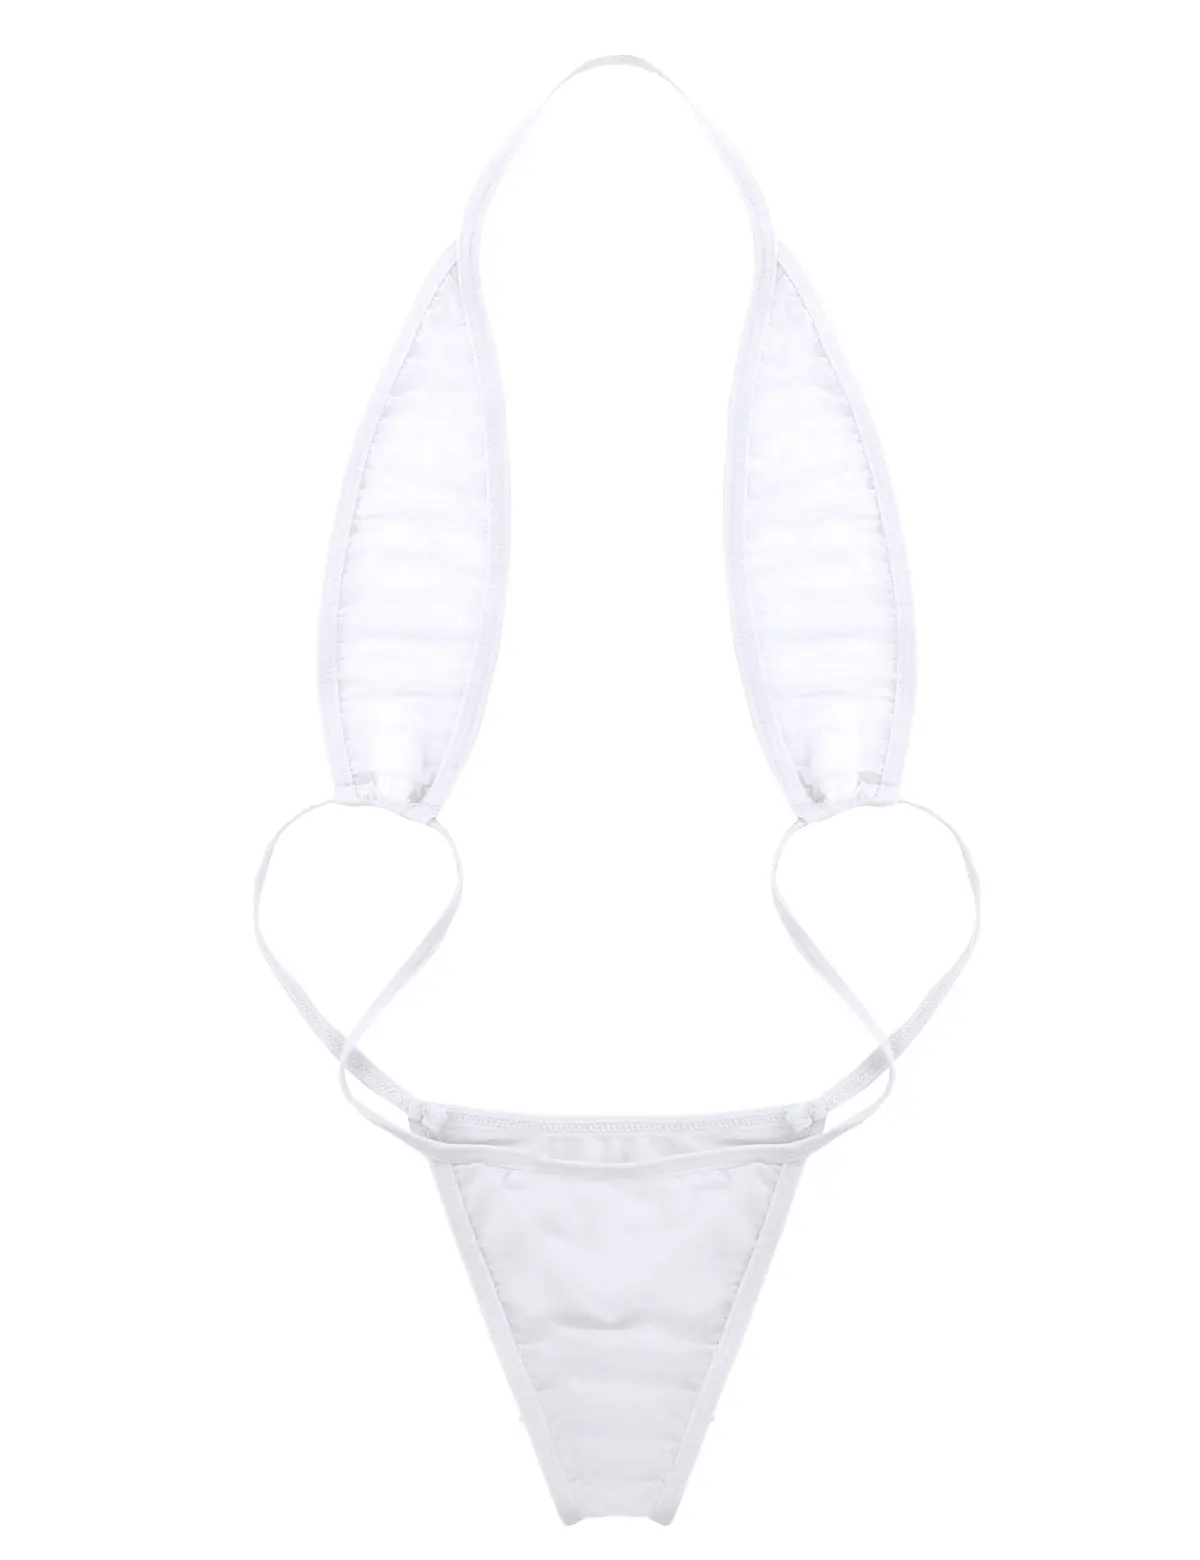 TiaoBug женский сексуальный цельный прозрачный мини стринги купальник трикини пляжный купальник эротический прозрачный ночное белье - Цвет: White